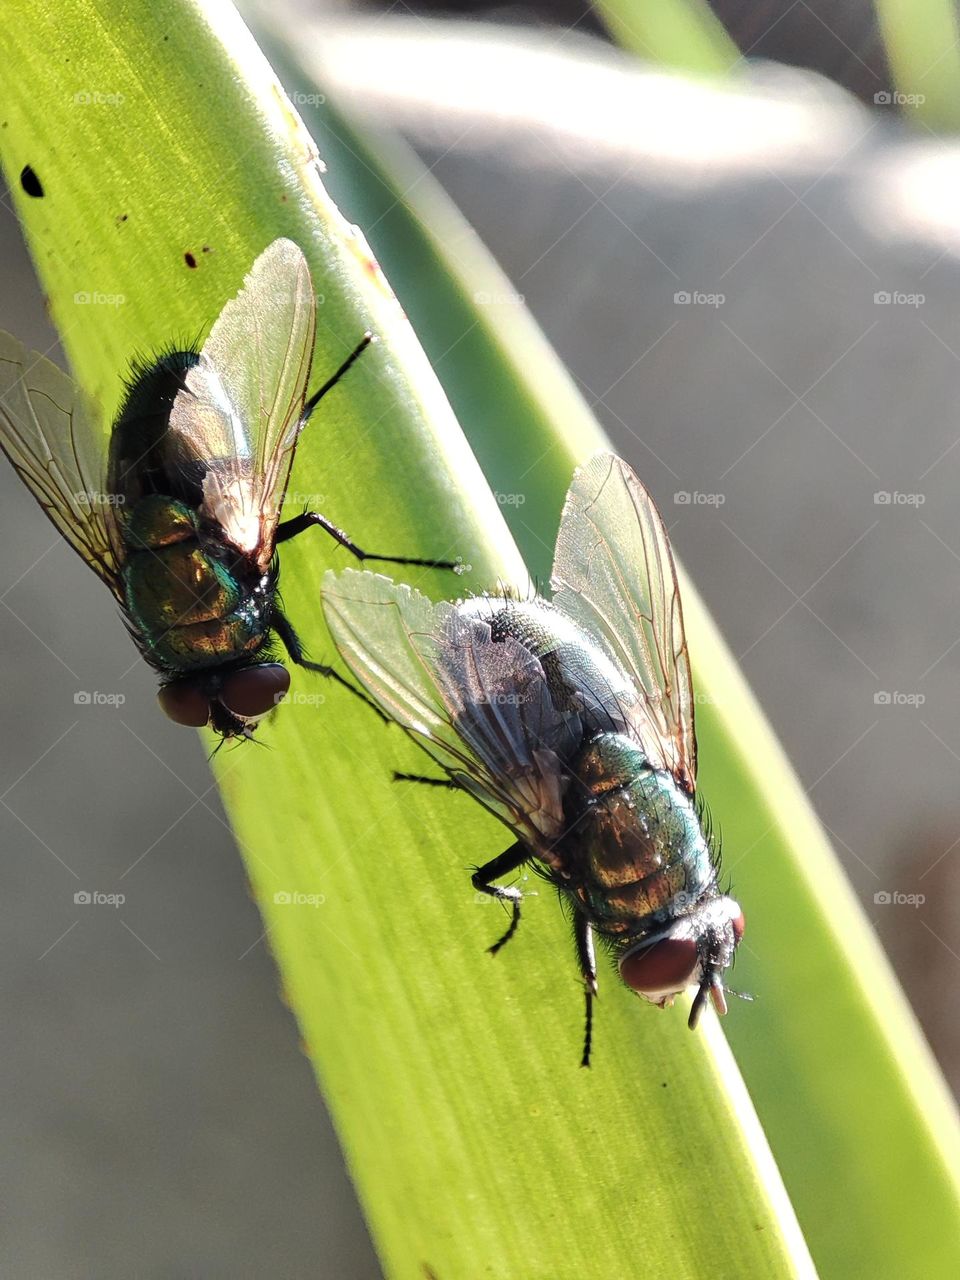 Flies on a leaf